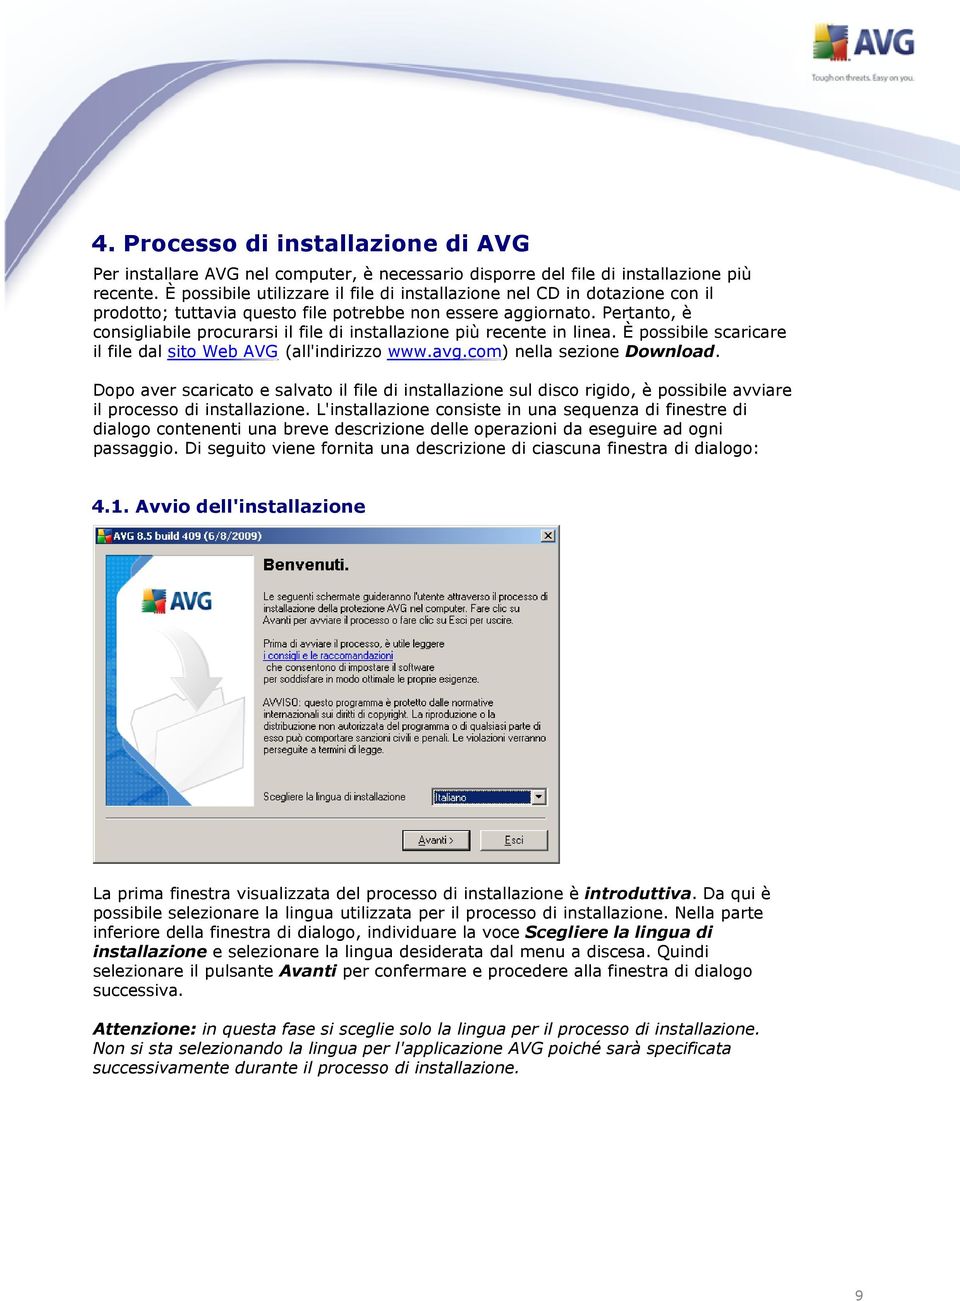 Pertanto, è consigliabile procurarsi il file di installazione più recente in linea. È possibile scaricare il file dal sito Web AVG (all'indirizzo www.avg.com) nella sezione Download.